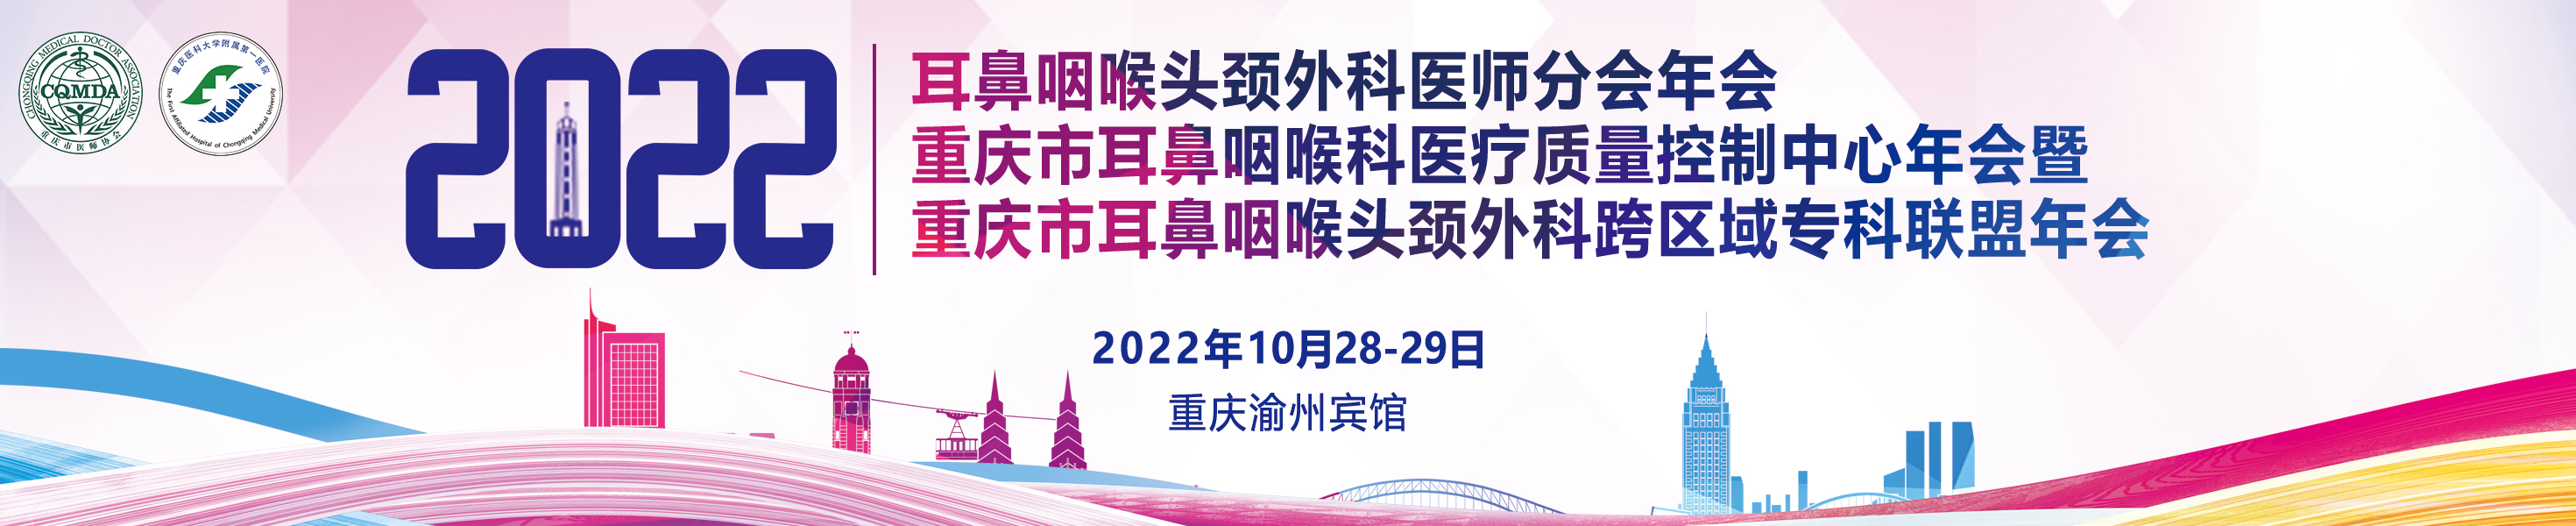 2022年耳鼻咽喉头颈外科医师分会年会、重庆市耳鼻咽喉科医疗质量控制中心年会暨重庆市耳鼻咽喉头颈外科跨区域专科联盟年会